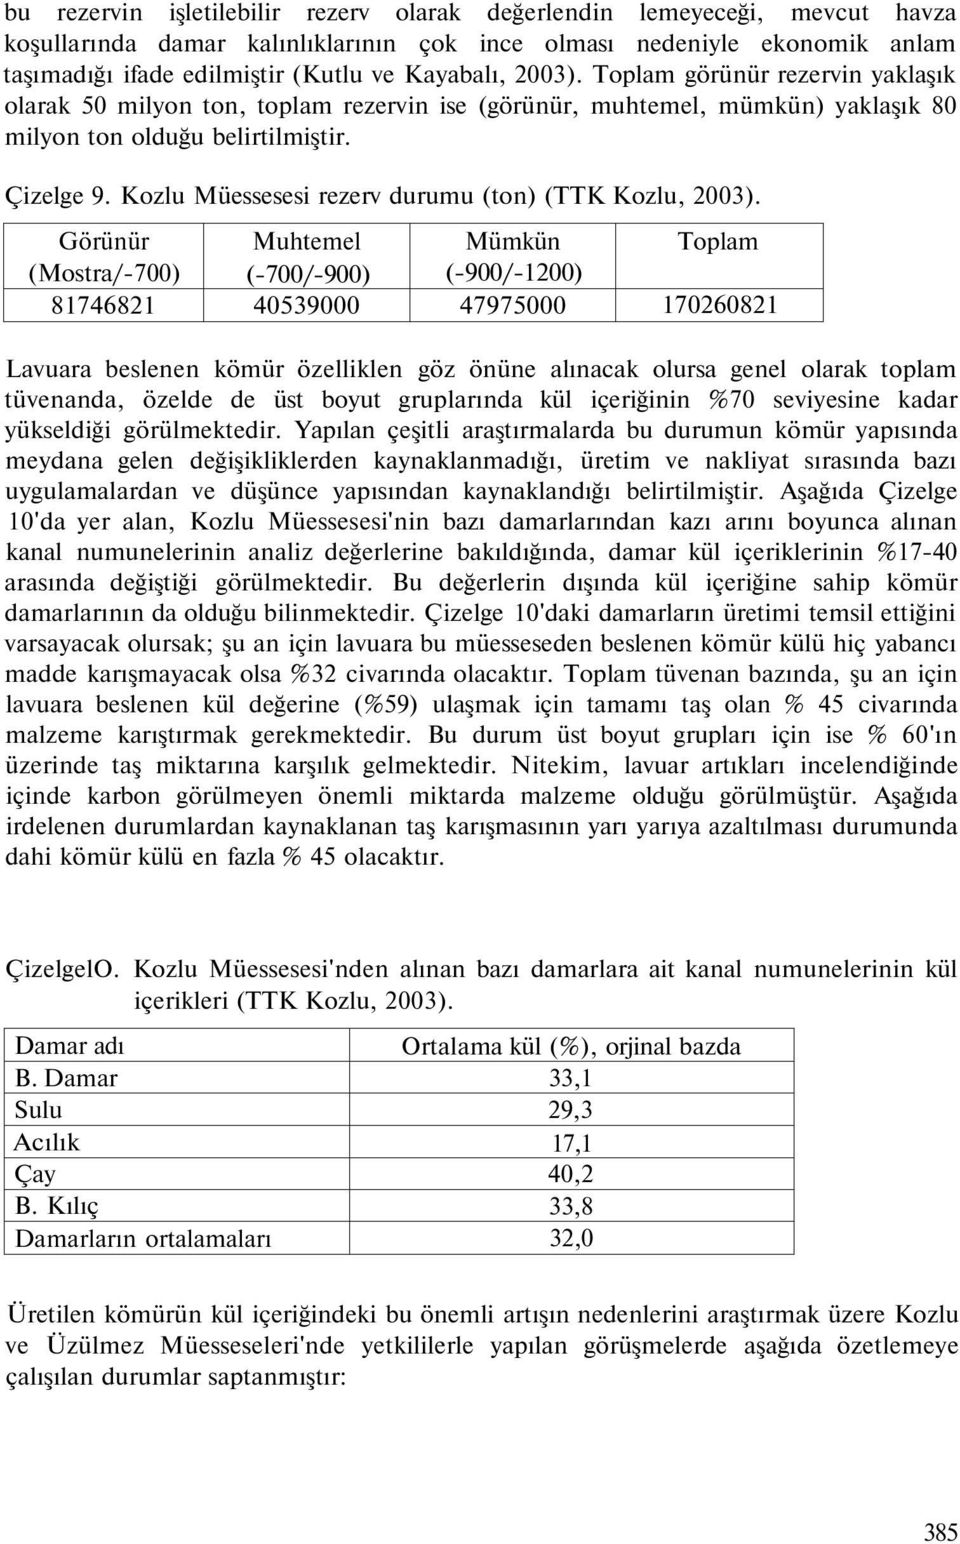 Kozlu Müessesesi rezerv durumu (ton) (TTK Kozlu, 2003).